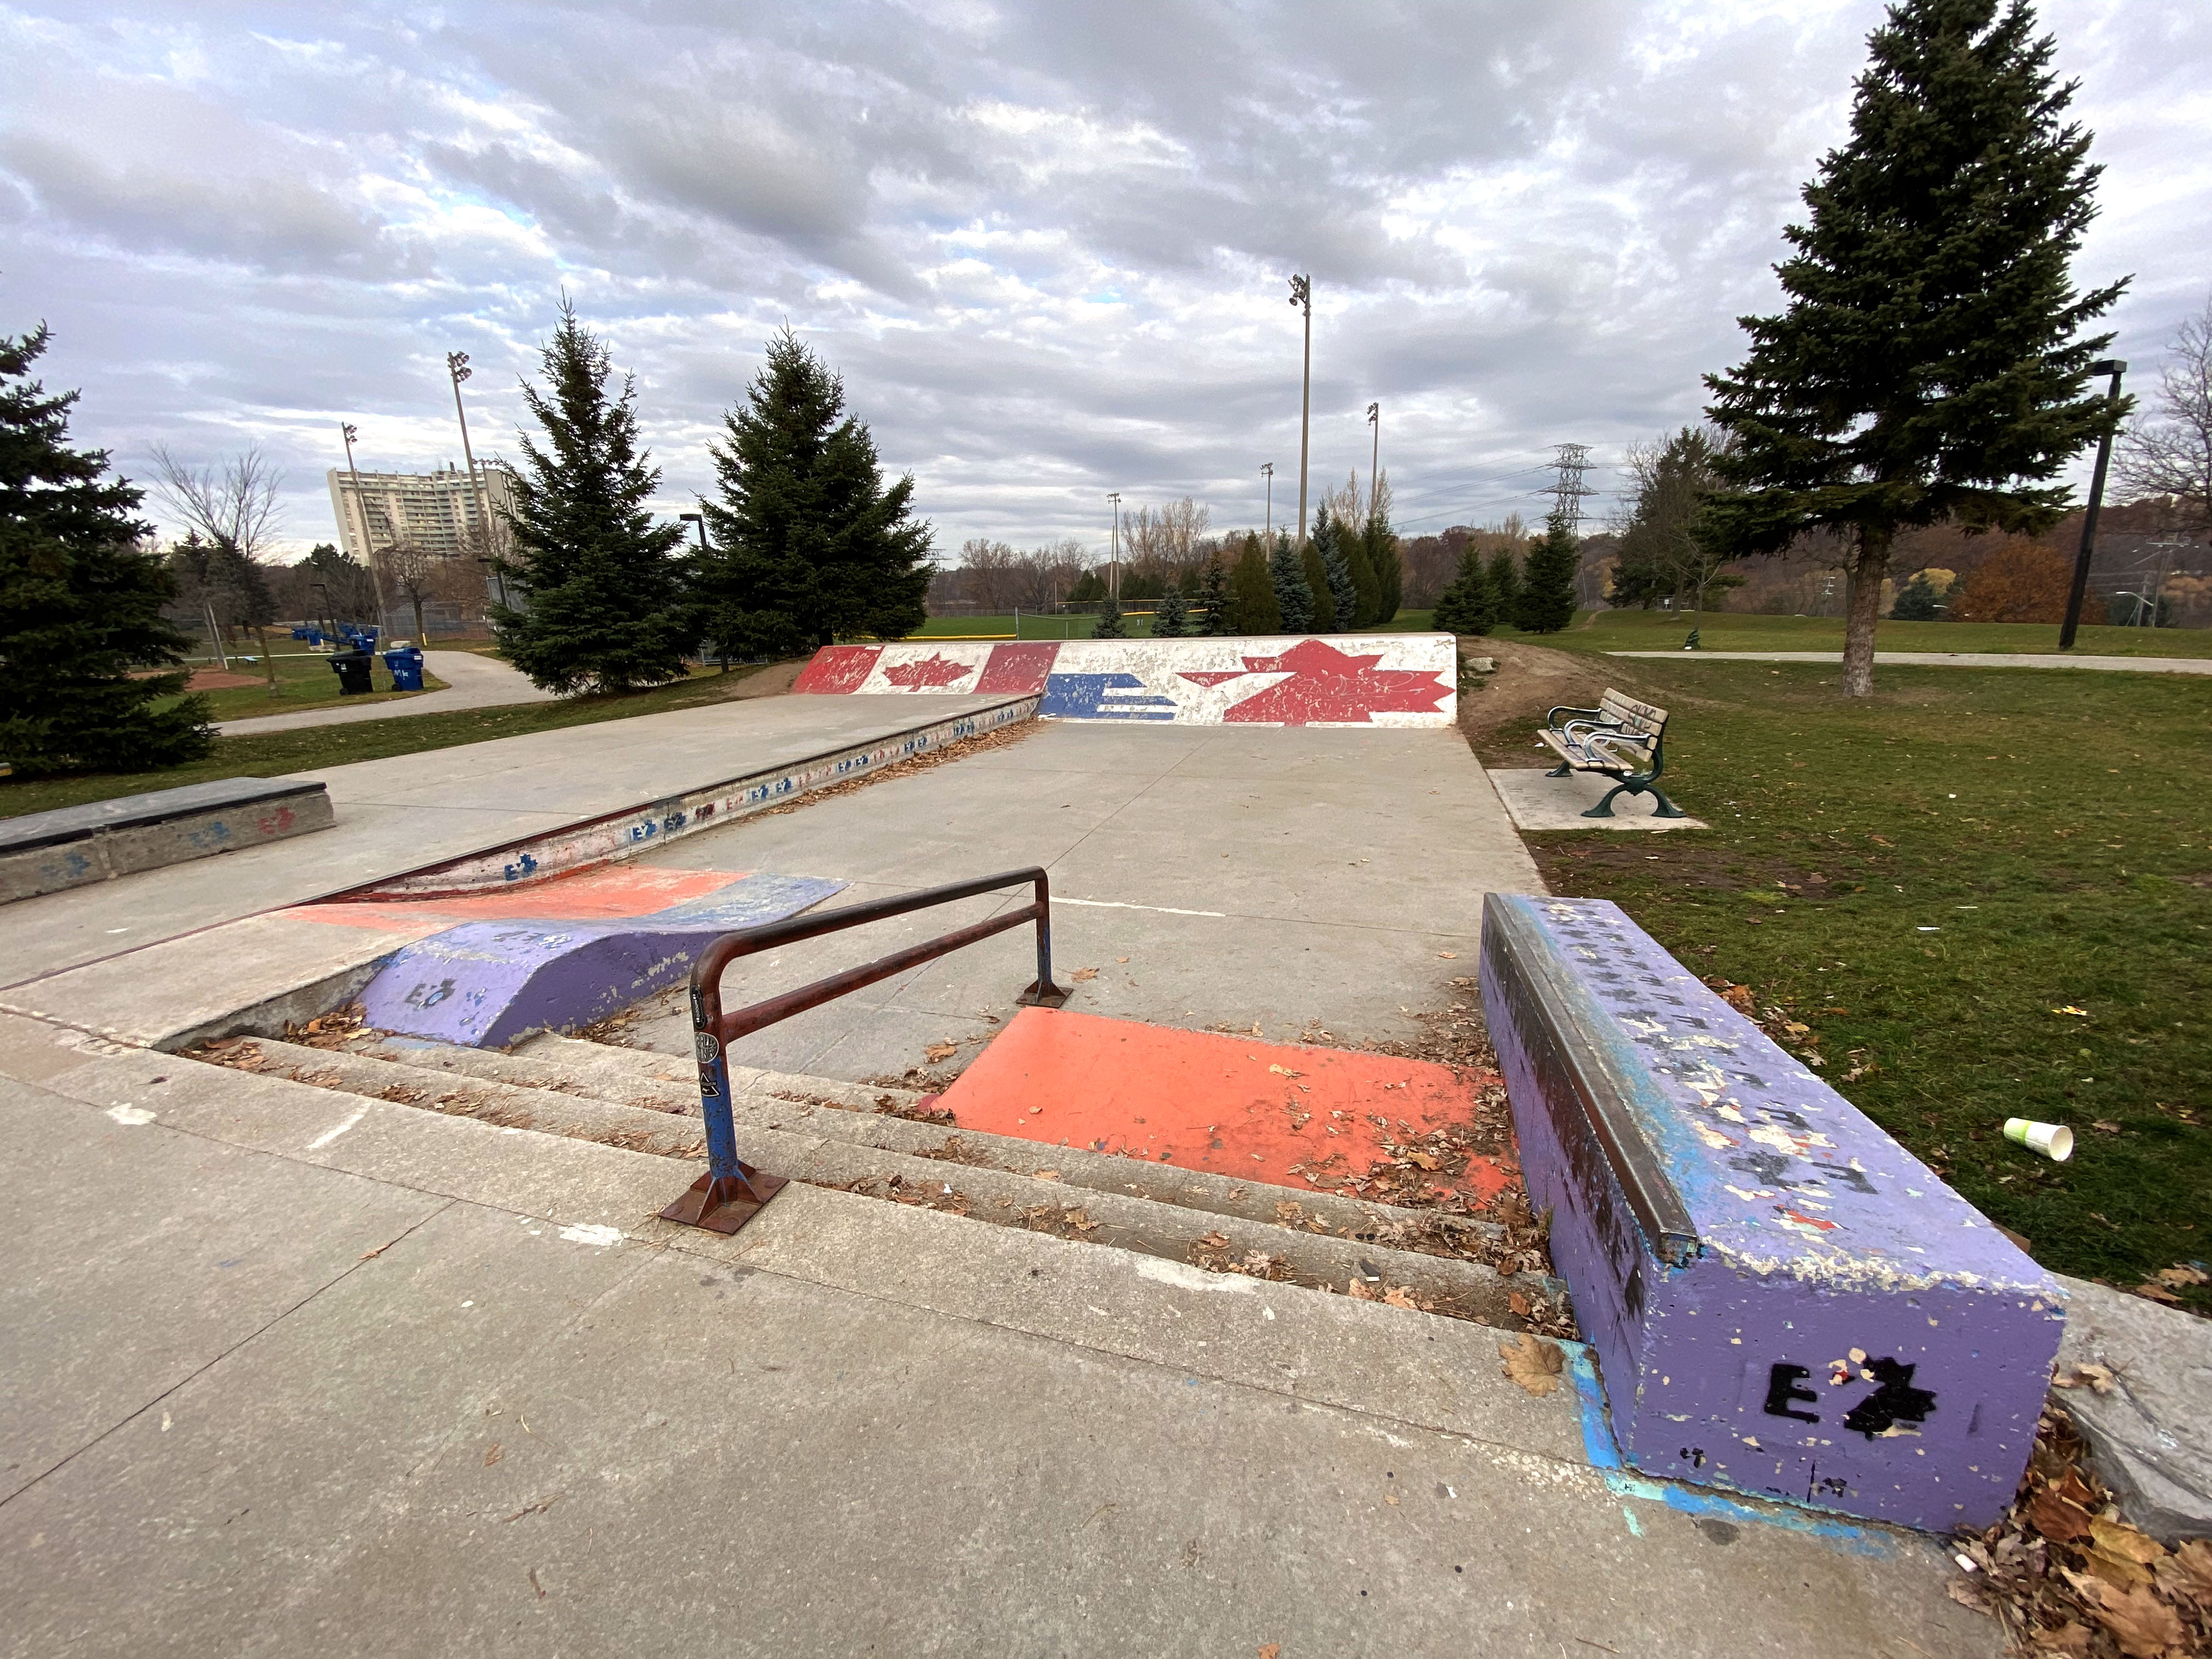 East York Skatepark in Toronto